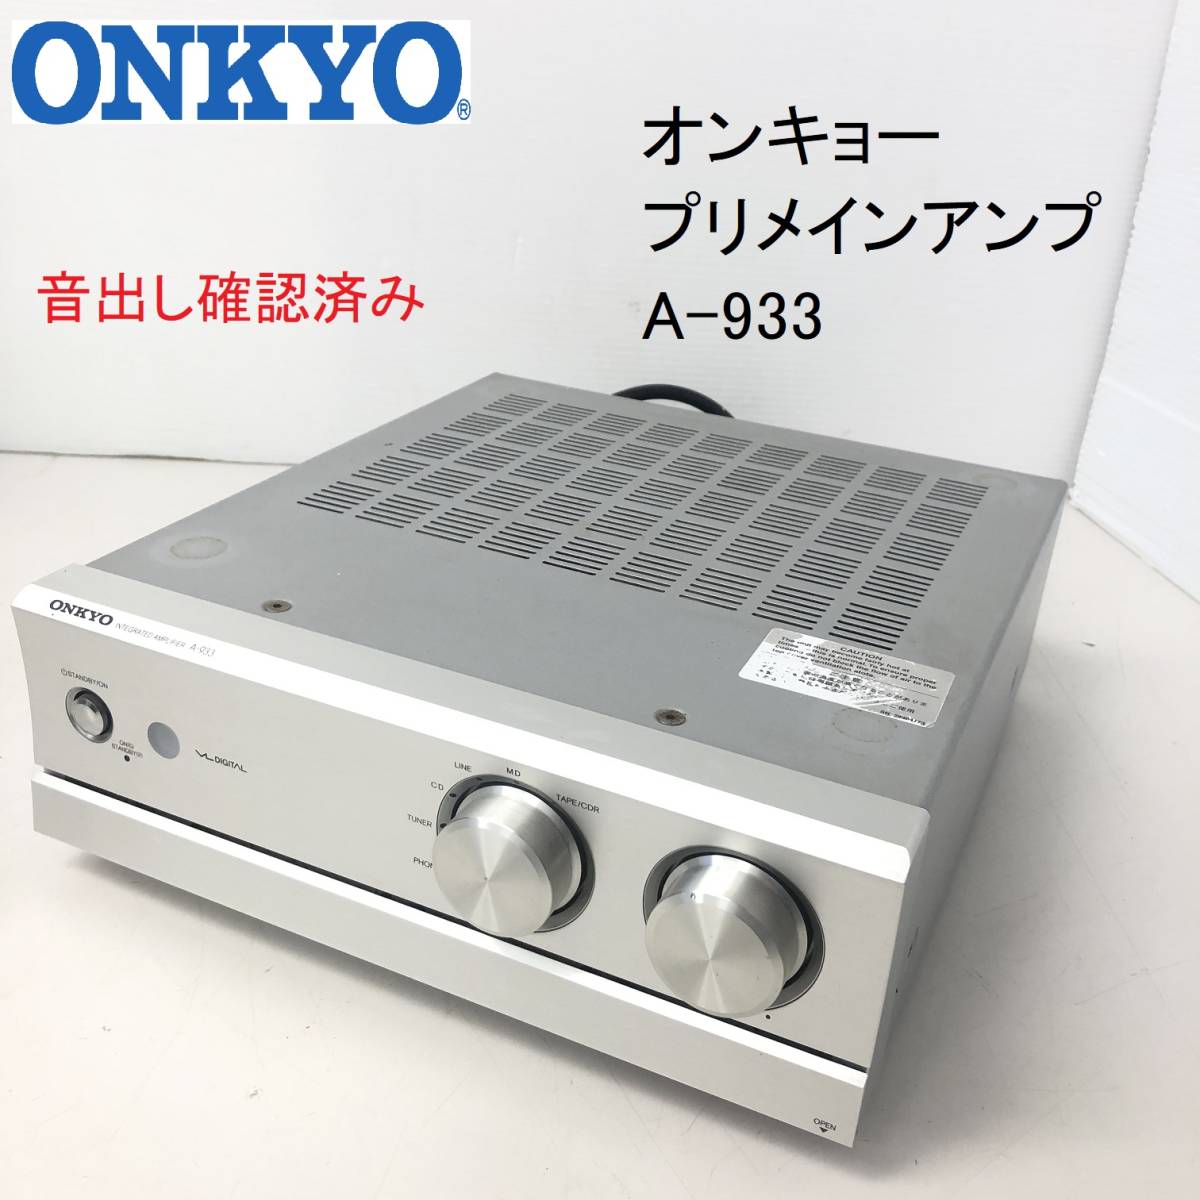 ONKYO A-933 オークション比較 - 価格.com